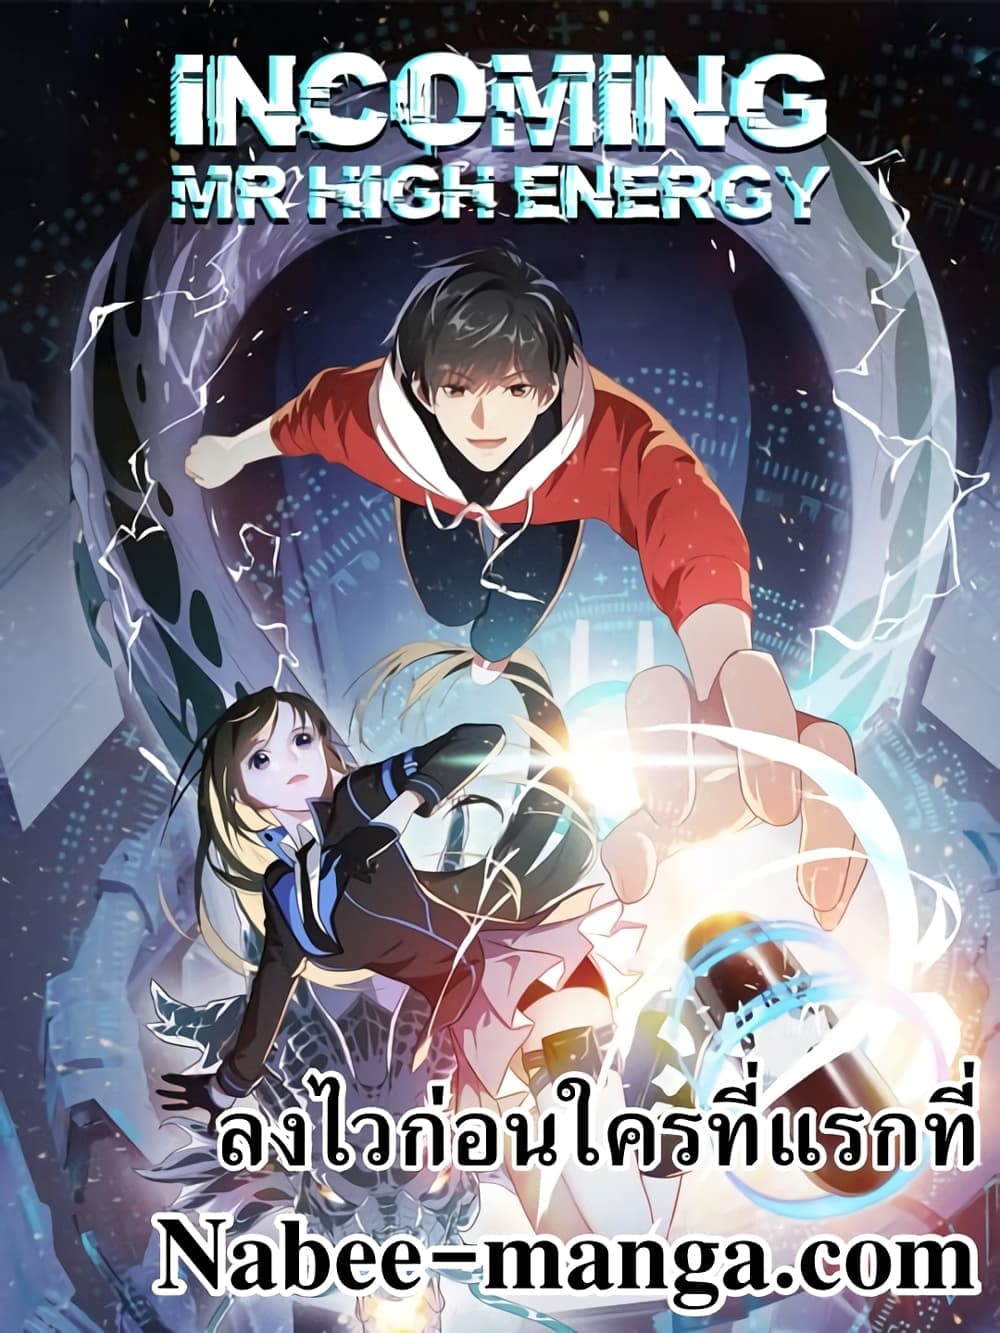 High Energy Strikes 202 (1)